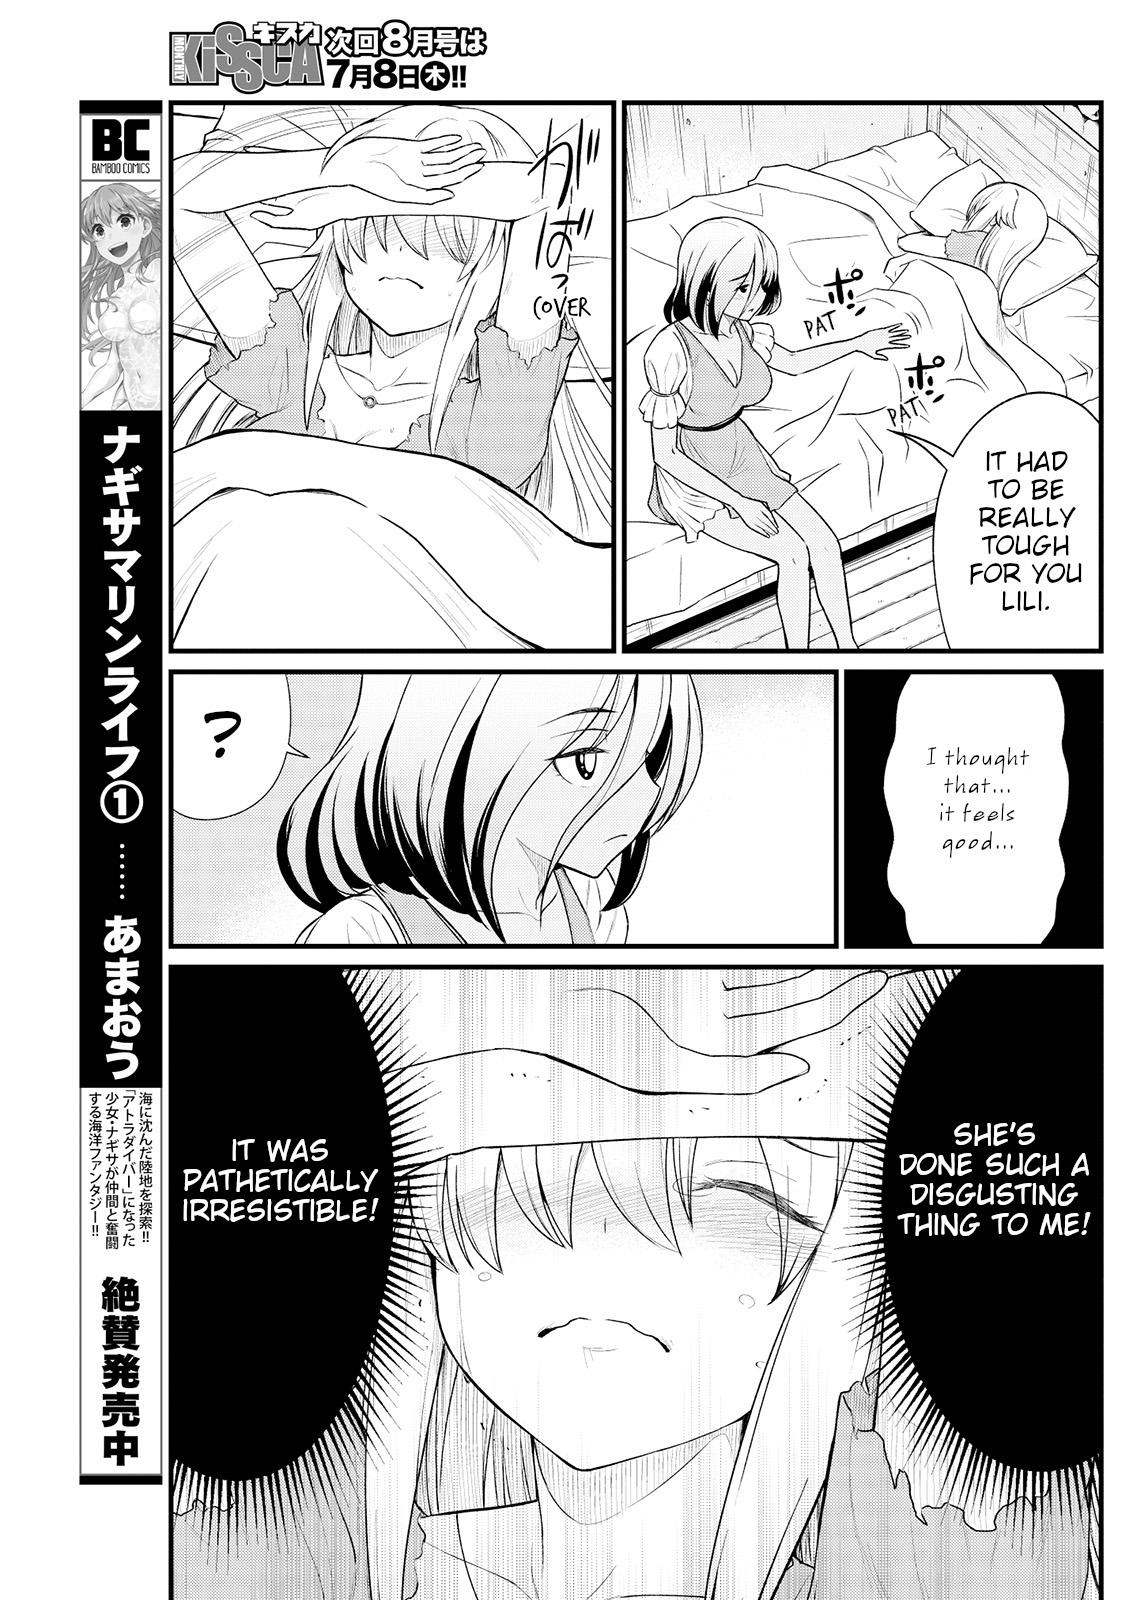 Girl Kukkorose no Himekishi to nari, Yuri Shoukan de Hataraku koto ni Narimashita. 9 | Becoming Princess Knight and Working at Yuri Brothel 9 Shorts - Page 11